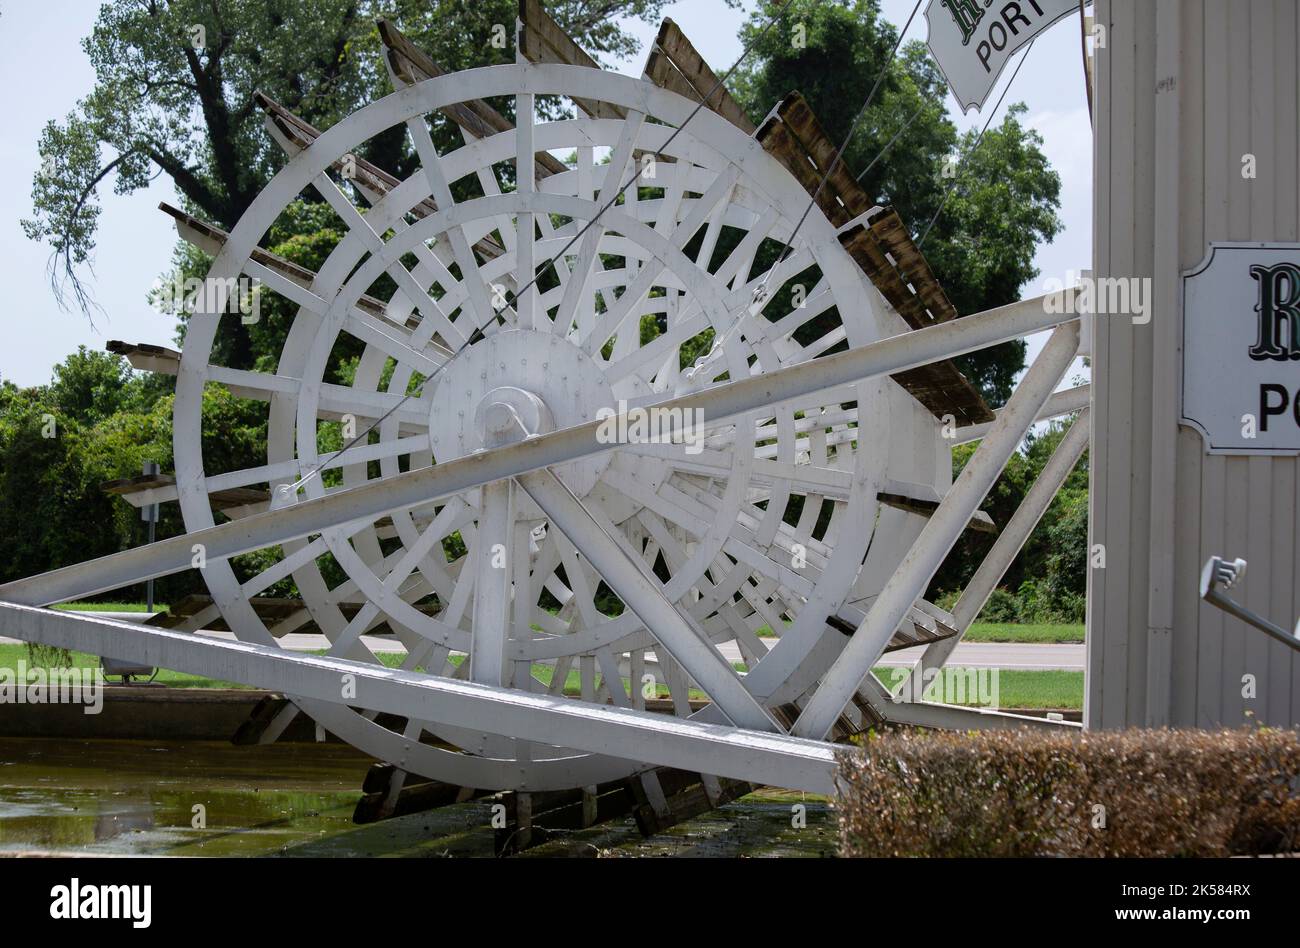 CENTRE D'ACCUEIL, Greenville, Mississippi/États-Unis - 11 juillet 2016 : roue à aubes blanche au centre d'accueil de Greenville, Mississippi. Banque D'Images